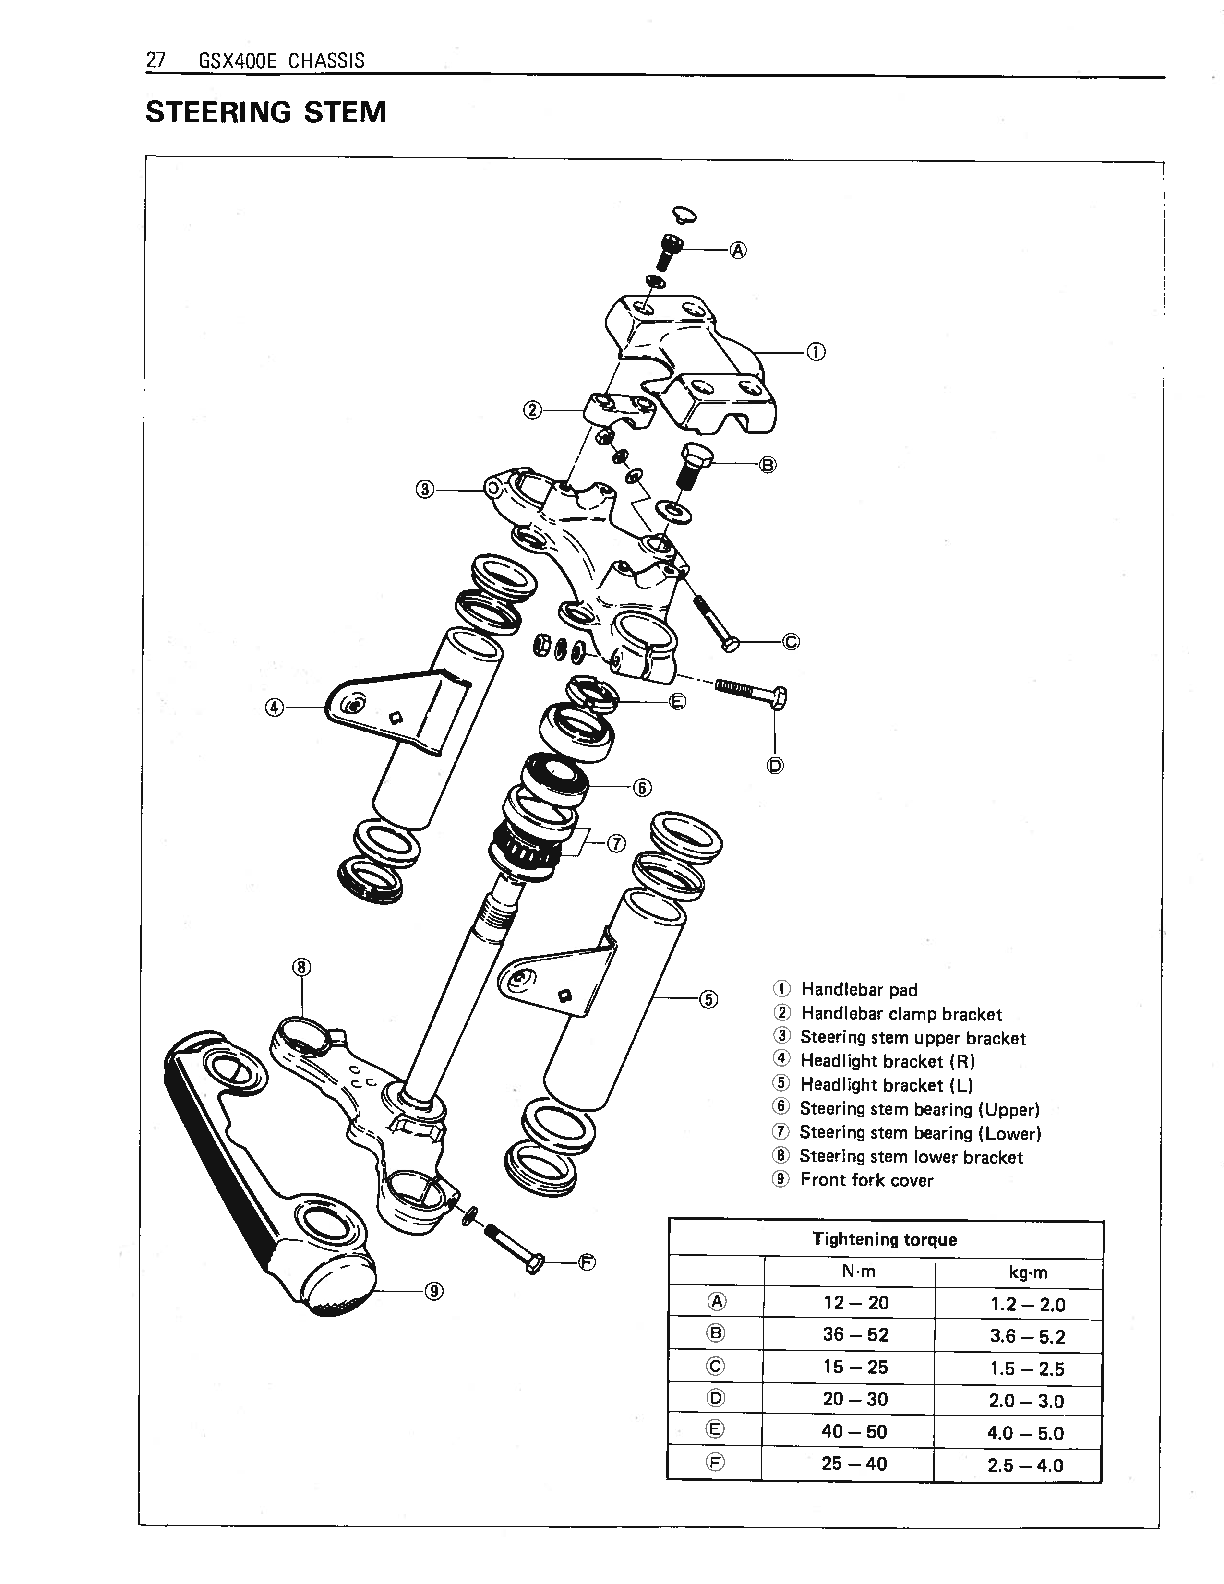 1980-1984 Suzuki GSX400S Twin Cylinder Service Manual